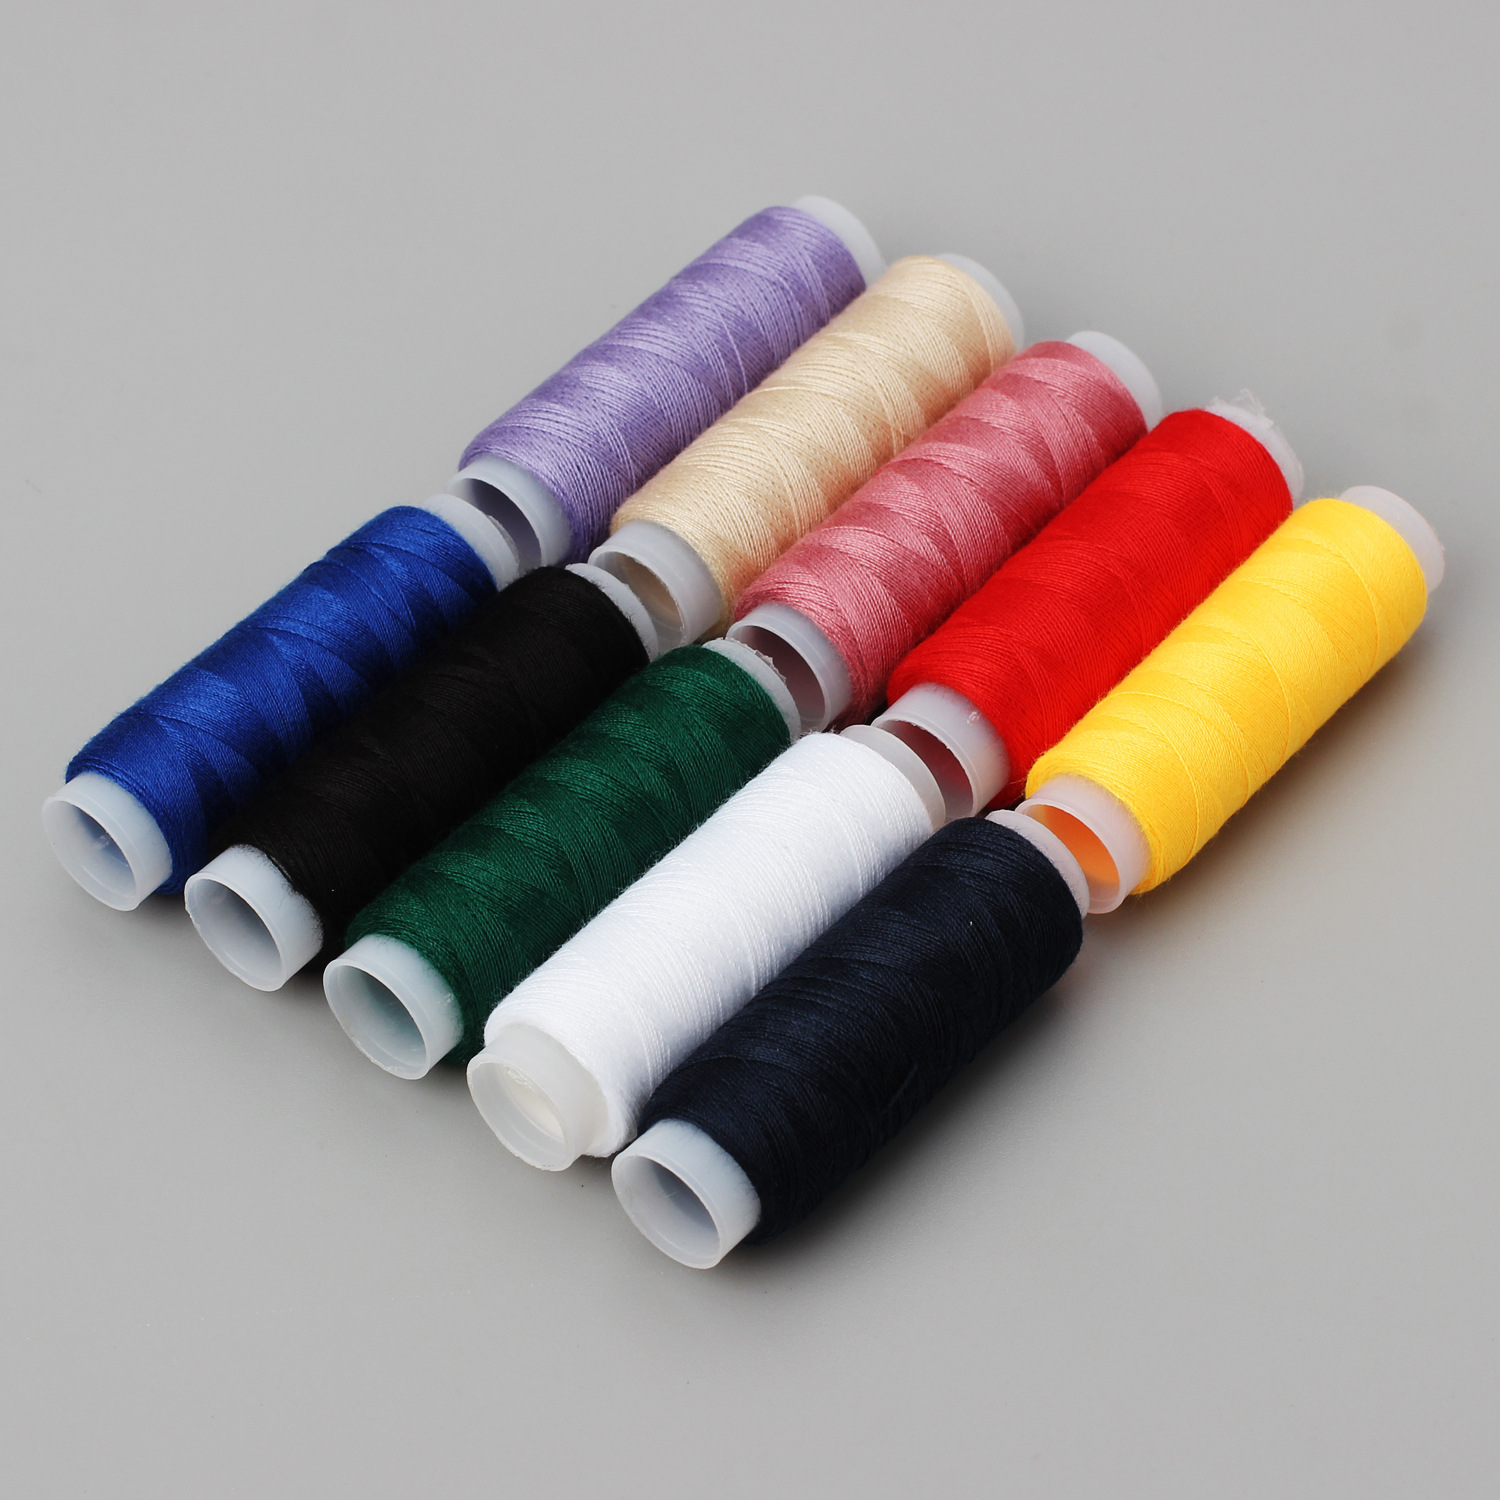 家用彩色涤纶缝纫线 定色手缝线 10色402缝纫线手缝线套装